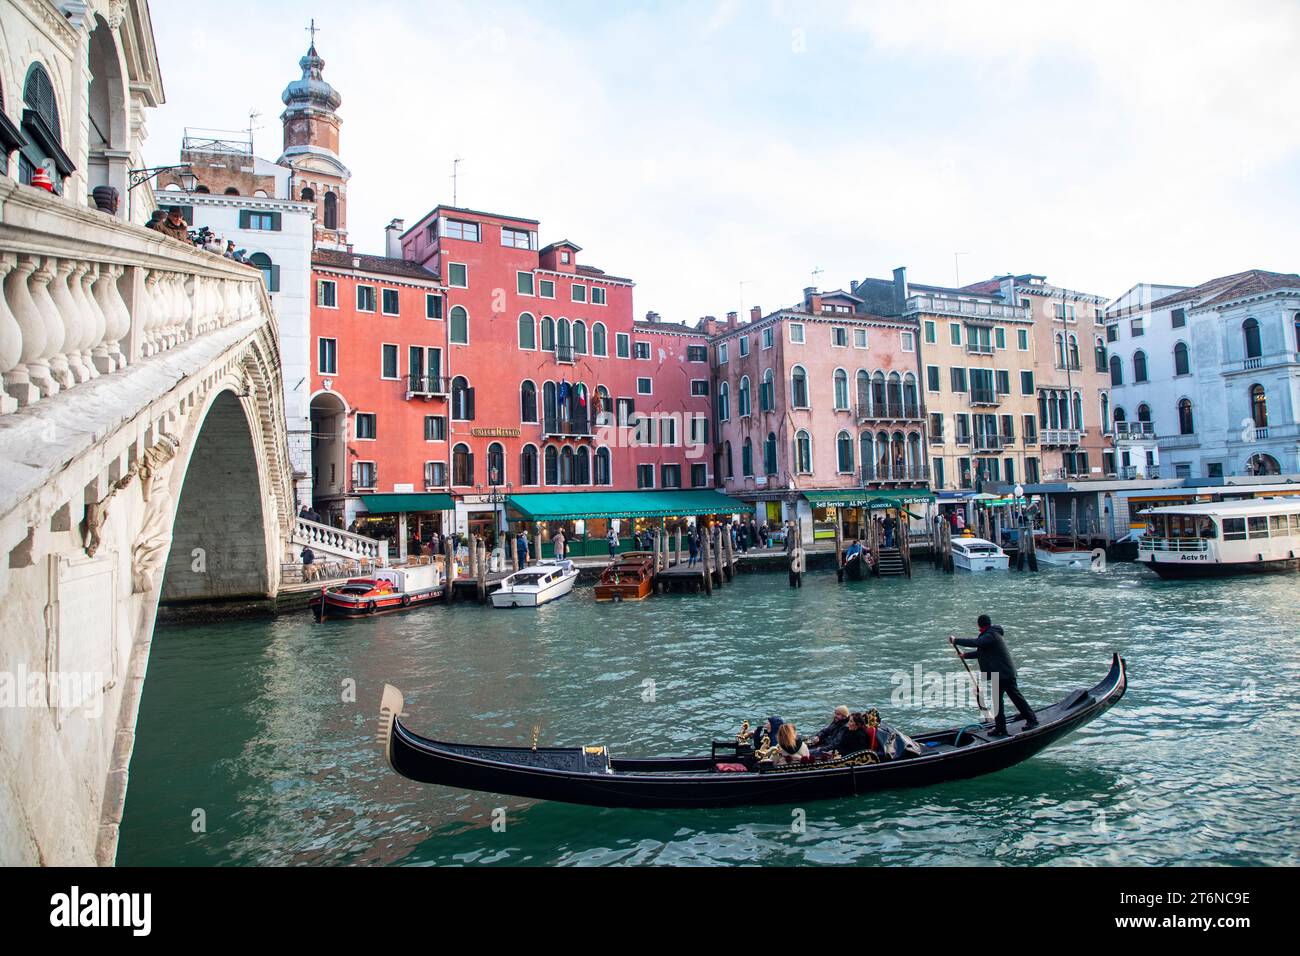 Venise, Italie. Touristes à cheval en gondole au Grand Canal explorant la ville de Venise. Banque D'Images